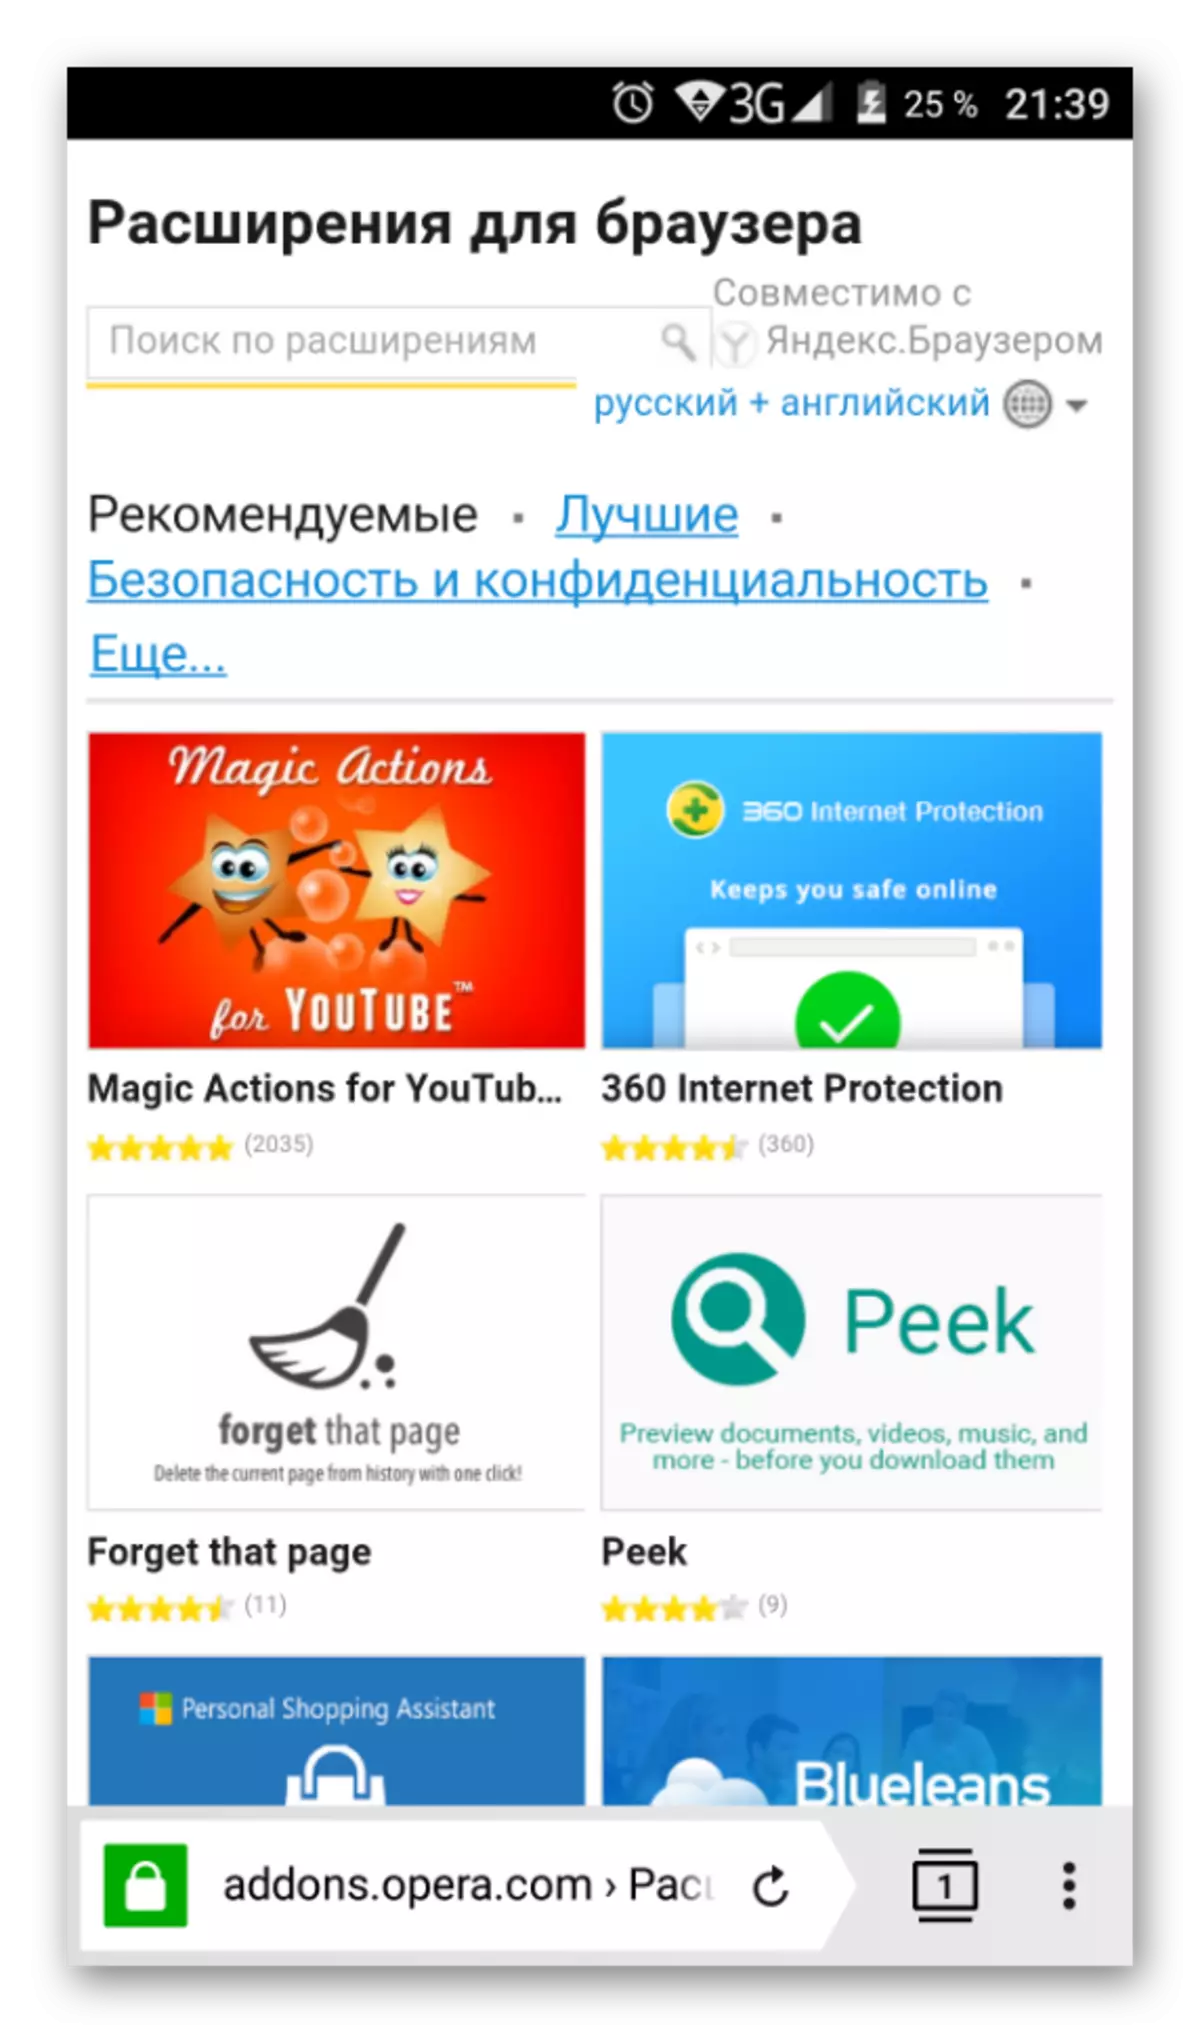 移动版歌剧插件在Yandex.Browser